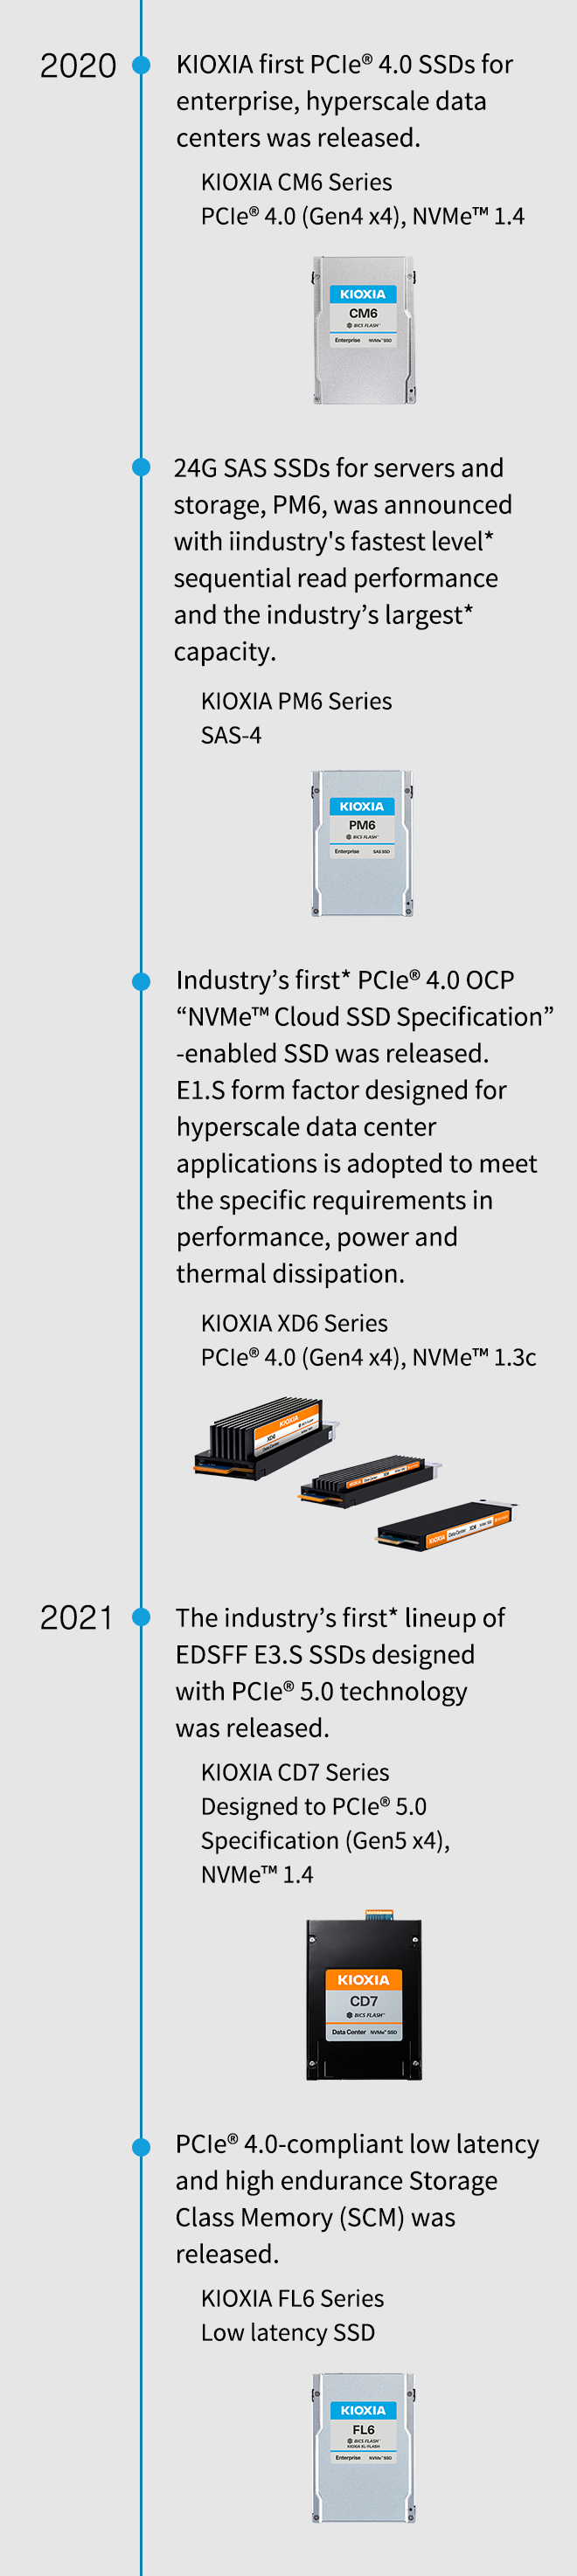 2020. Presentate le prime unità SSD PCIe® 4,0 di KIOXIA per i data center enterprise e hyperscale. KIOXIA serie CM6 PCIe® 4.0 (Gen4 x4), NVMe™ 1.4. Vengono annunciate le unità SSD SAS da 24G per server e archiviazione, PM6, con le prestazioni di lettura sequenziale di livello* più elevate del settore e la capacità più grande* del settore. KIOXIA serie PM6 SAS-4. Viene rilasciata la prima* unità SSD PCIe® 4,0 OCP "NVMe™ Cloud SSD Specification" abilitata al settore. Il fattore di forma E1.S progettato per applicazioni di data center hyperscale viene adottato per soddisfare i requisiti specifici in termini di prestazioni, potenza e dissipazione termica. KIOXIA serie XD6 PCIe® 4.0 (Gen4 x4), NVMe™ 1.3c. 2021. Viene lanciata la prima* linea di SSD EDSFF E3.S del settore con tecnologia PCIe® 5.0. KIOXIA serie CD7 progettata secondo le specifiche di PCIe® 5.0 (Gen5 x4), NVMe™ 1.4. Viene rilasciata la memoria SCM (memoria della classe di archiviazione) a bassa latenza e alta resistenza conforme a PCIe® 4.0. Unità SSD a bassa latenza KIOXIA serie FL6